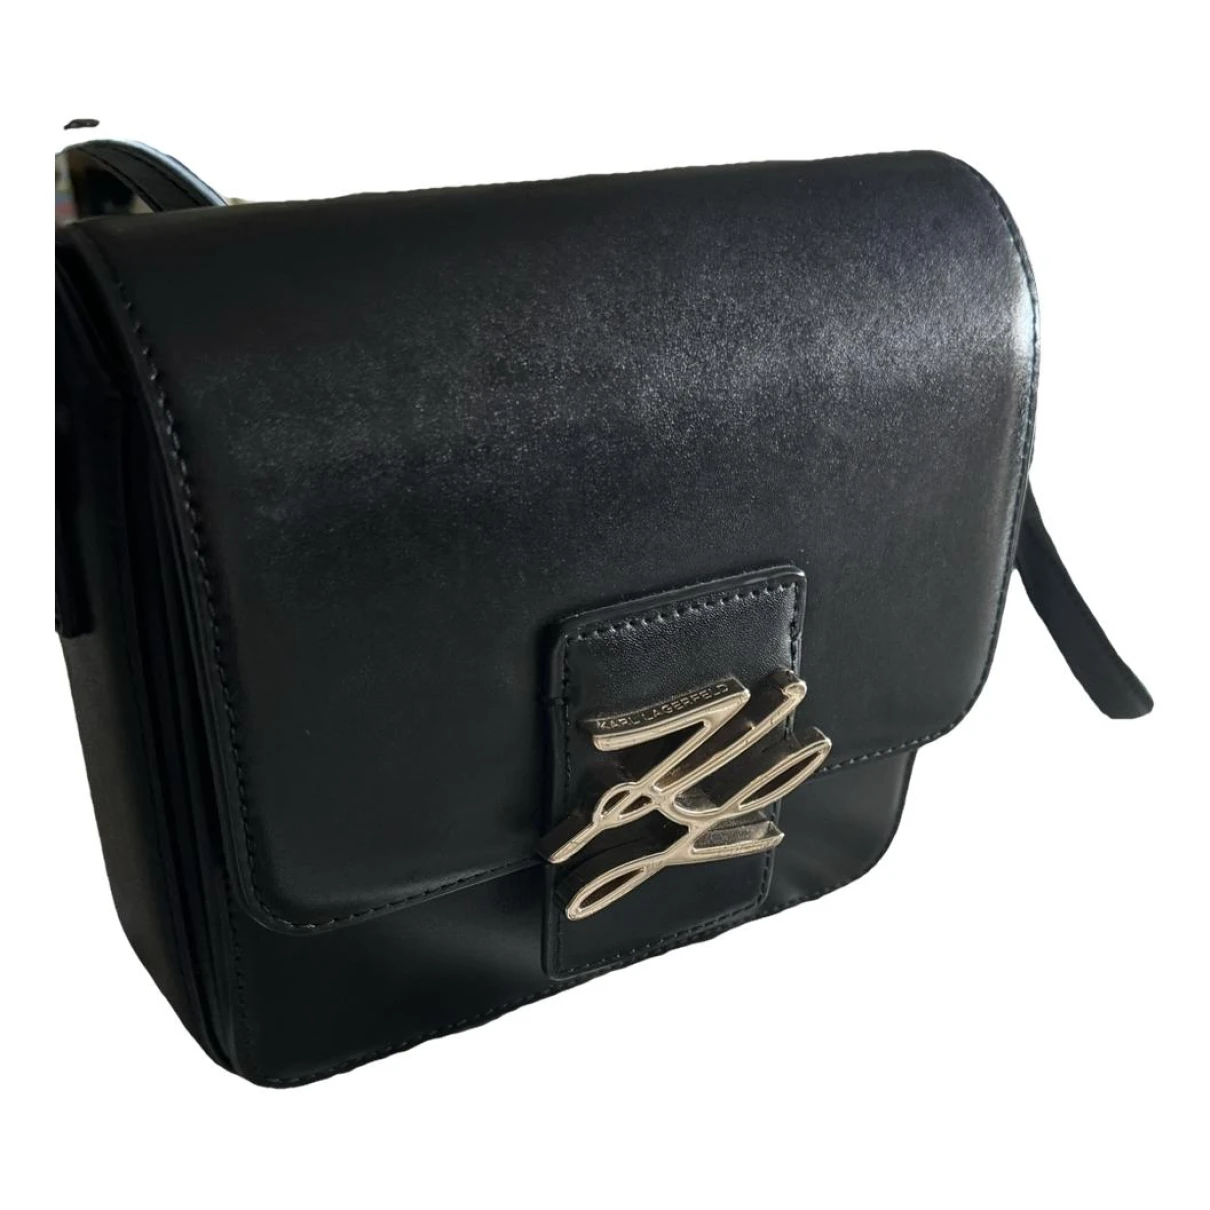 Pre-owned Karl Lagerfeld Leather Handbag In Black